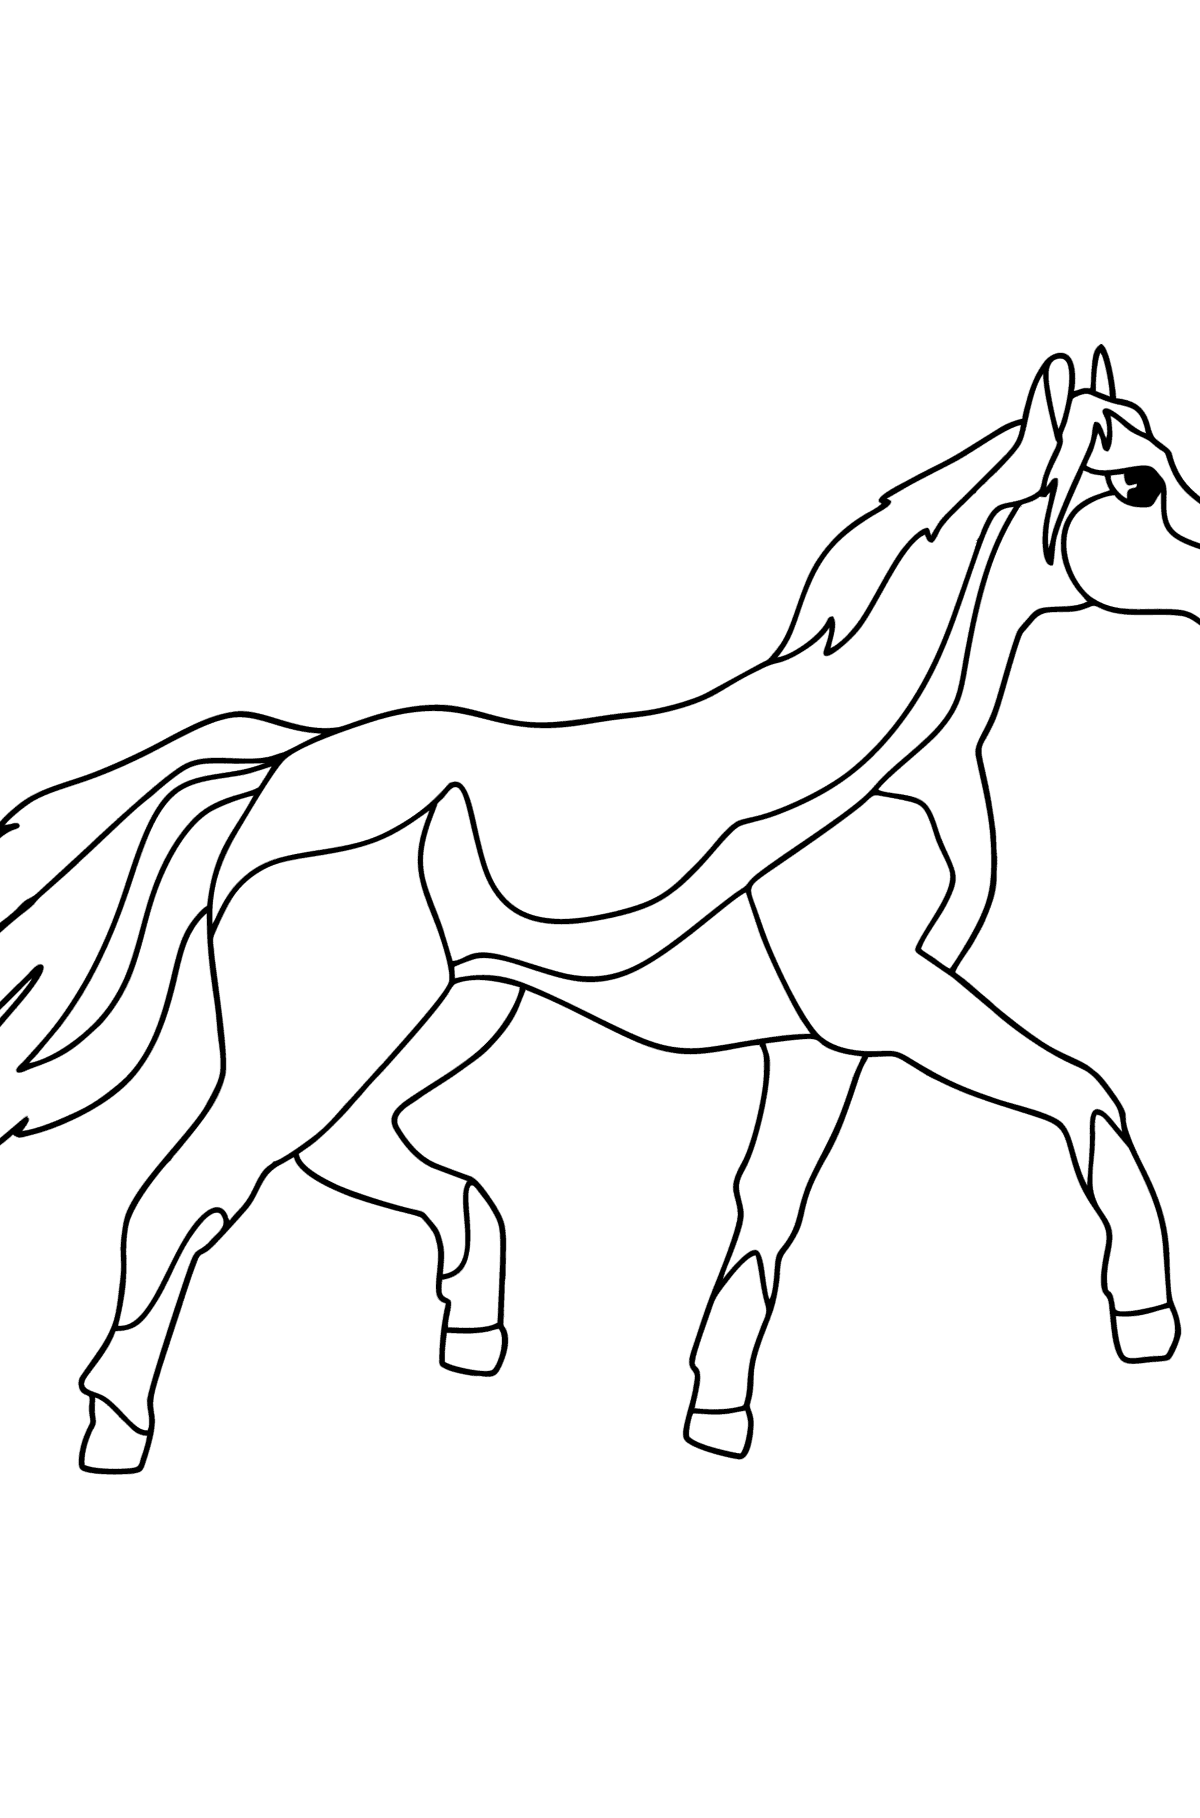 Раскраска Англо-арабская лошадь - Картинки для Детей